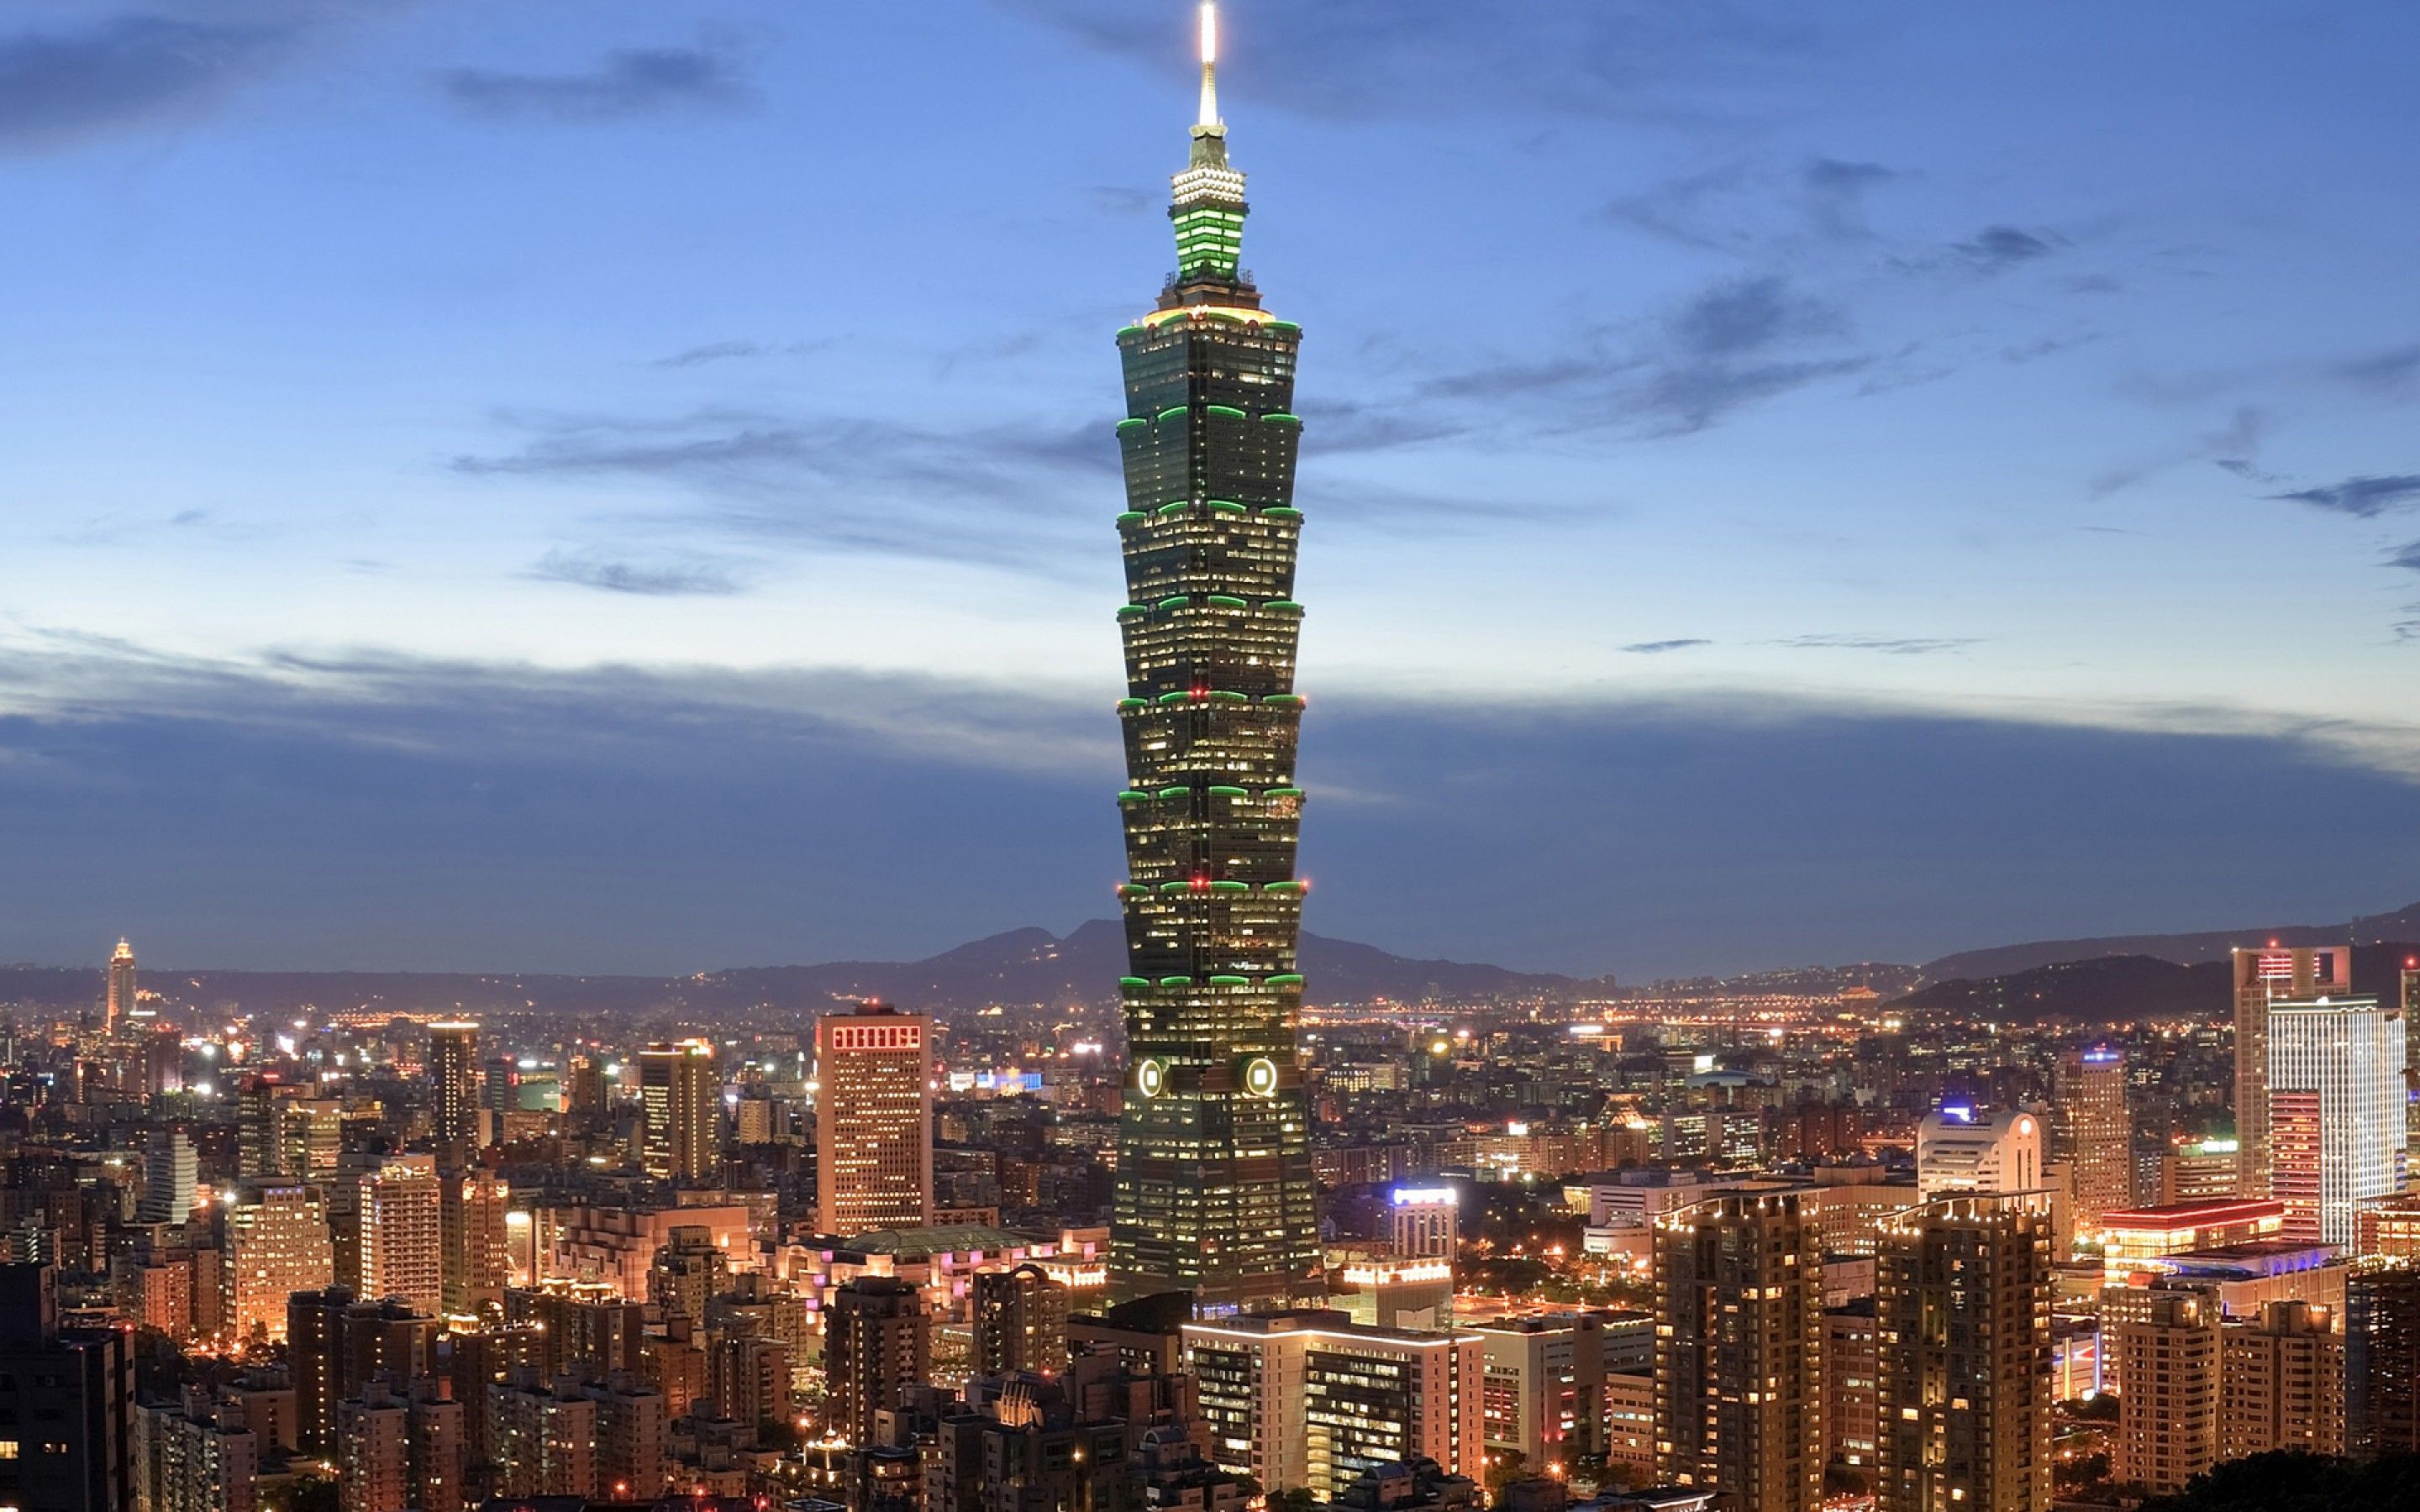 Taipei 101
